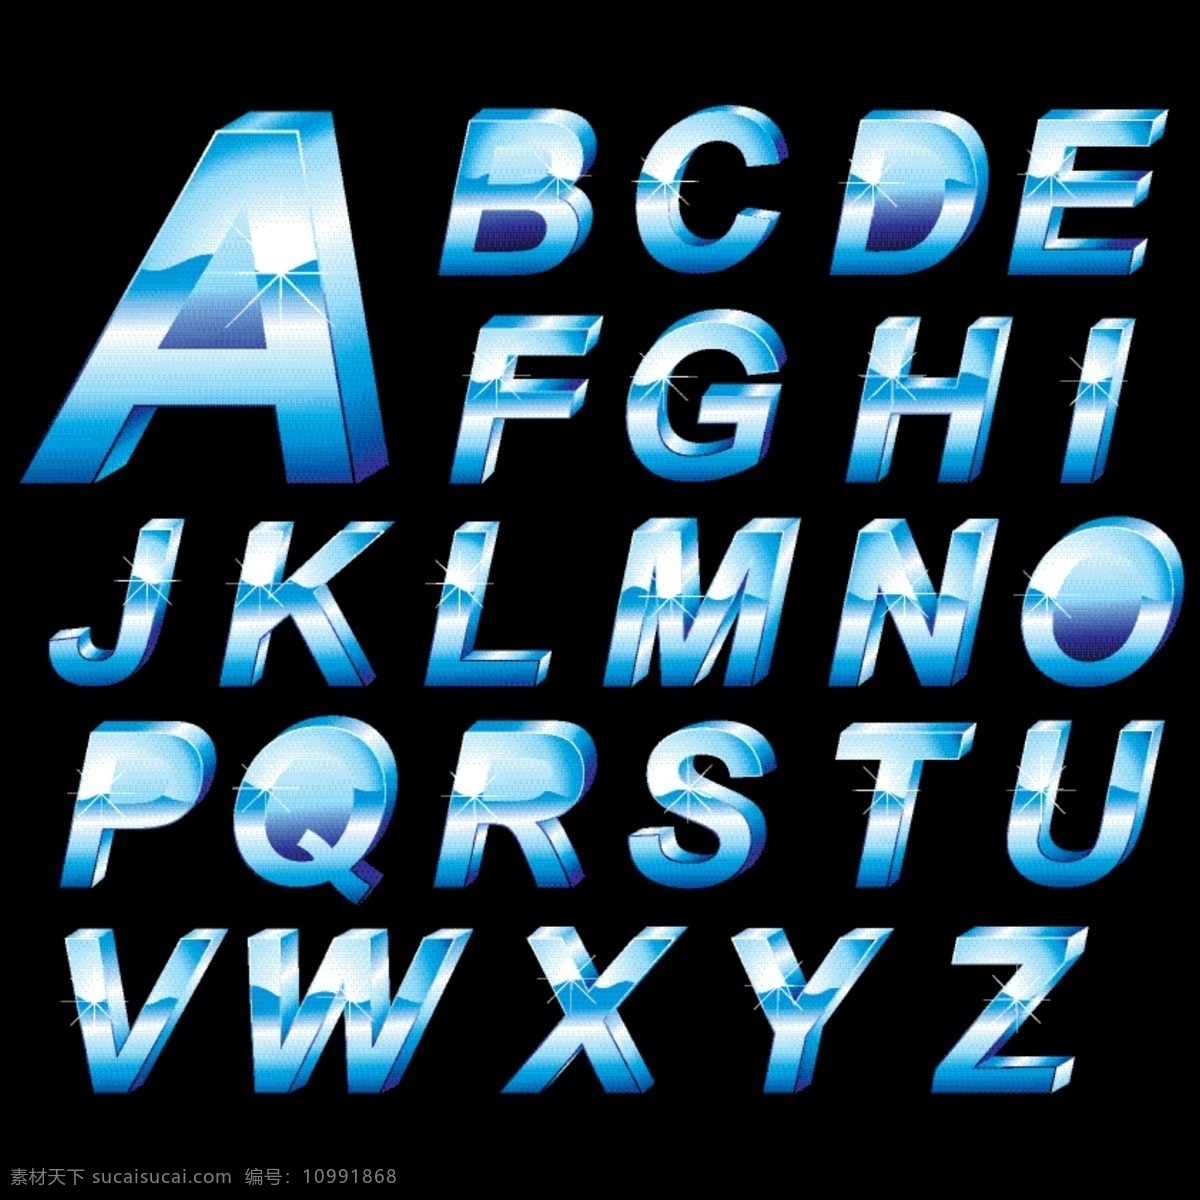 立体 字母 系列 矢量 格式 矢量素材 英文 英文字母 字体 关键字 矢量图 其他矢量图